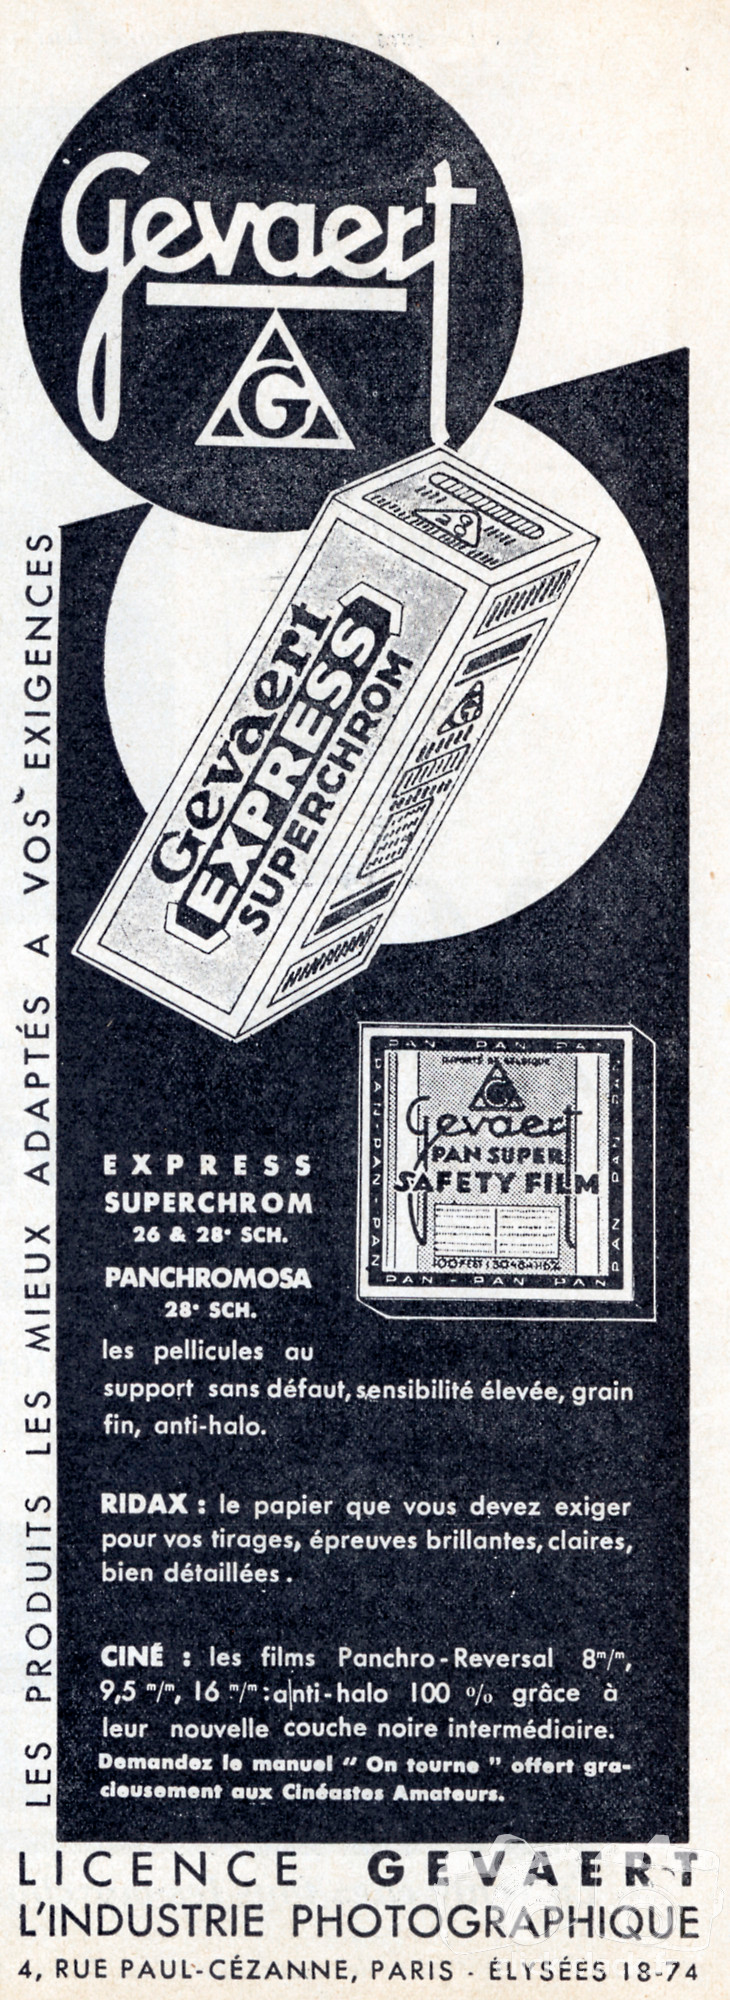 Gevaert - Films Express Superchrom, Panchromosa, Papier Ridax - 1937